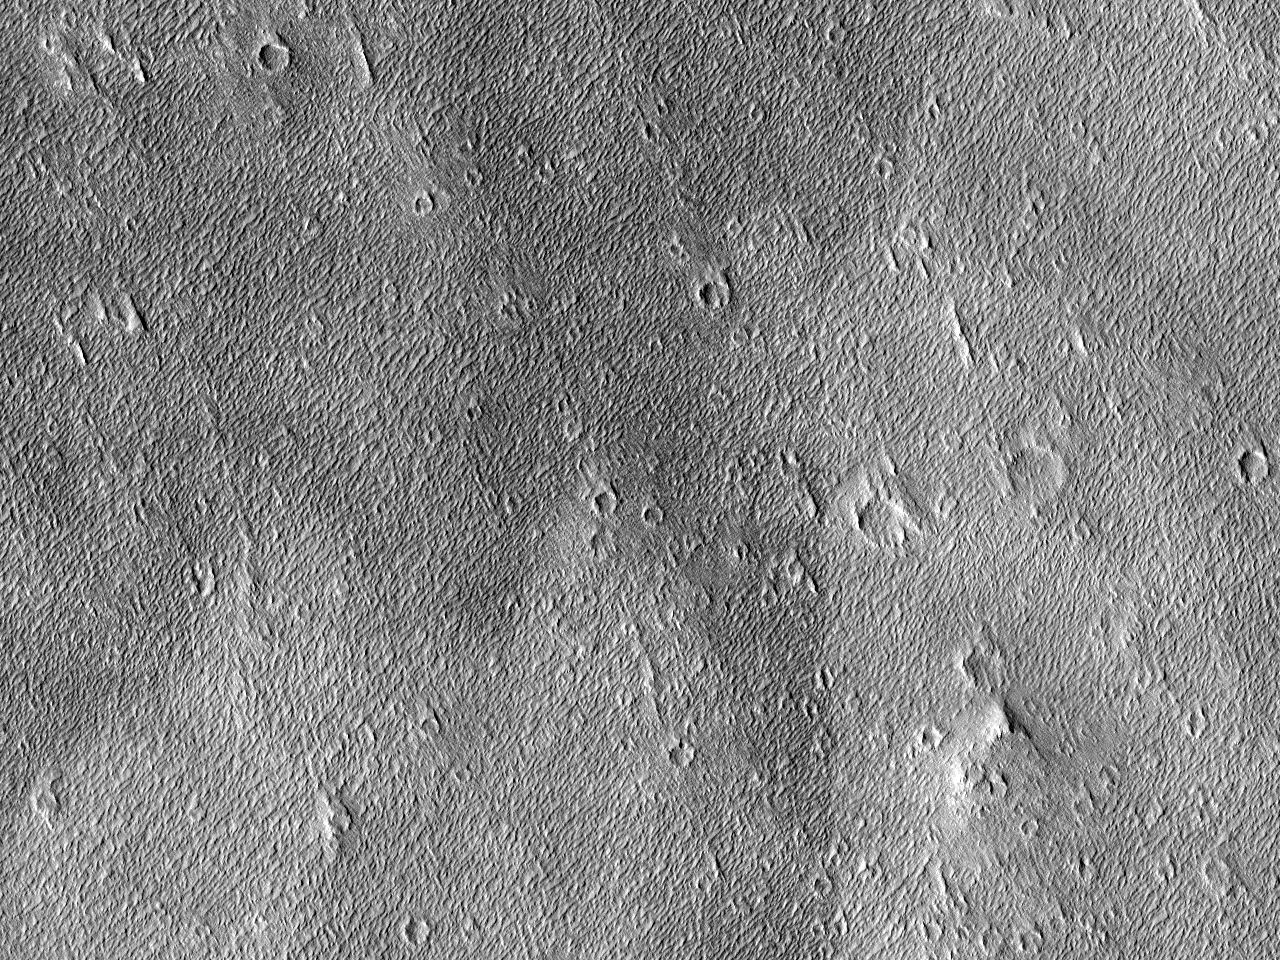 Πλαγιά του Όρους Όλυμπος (Olympus Mons)